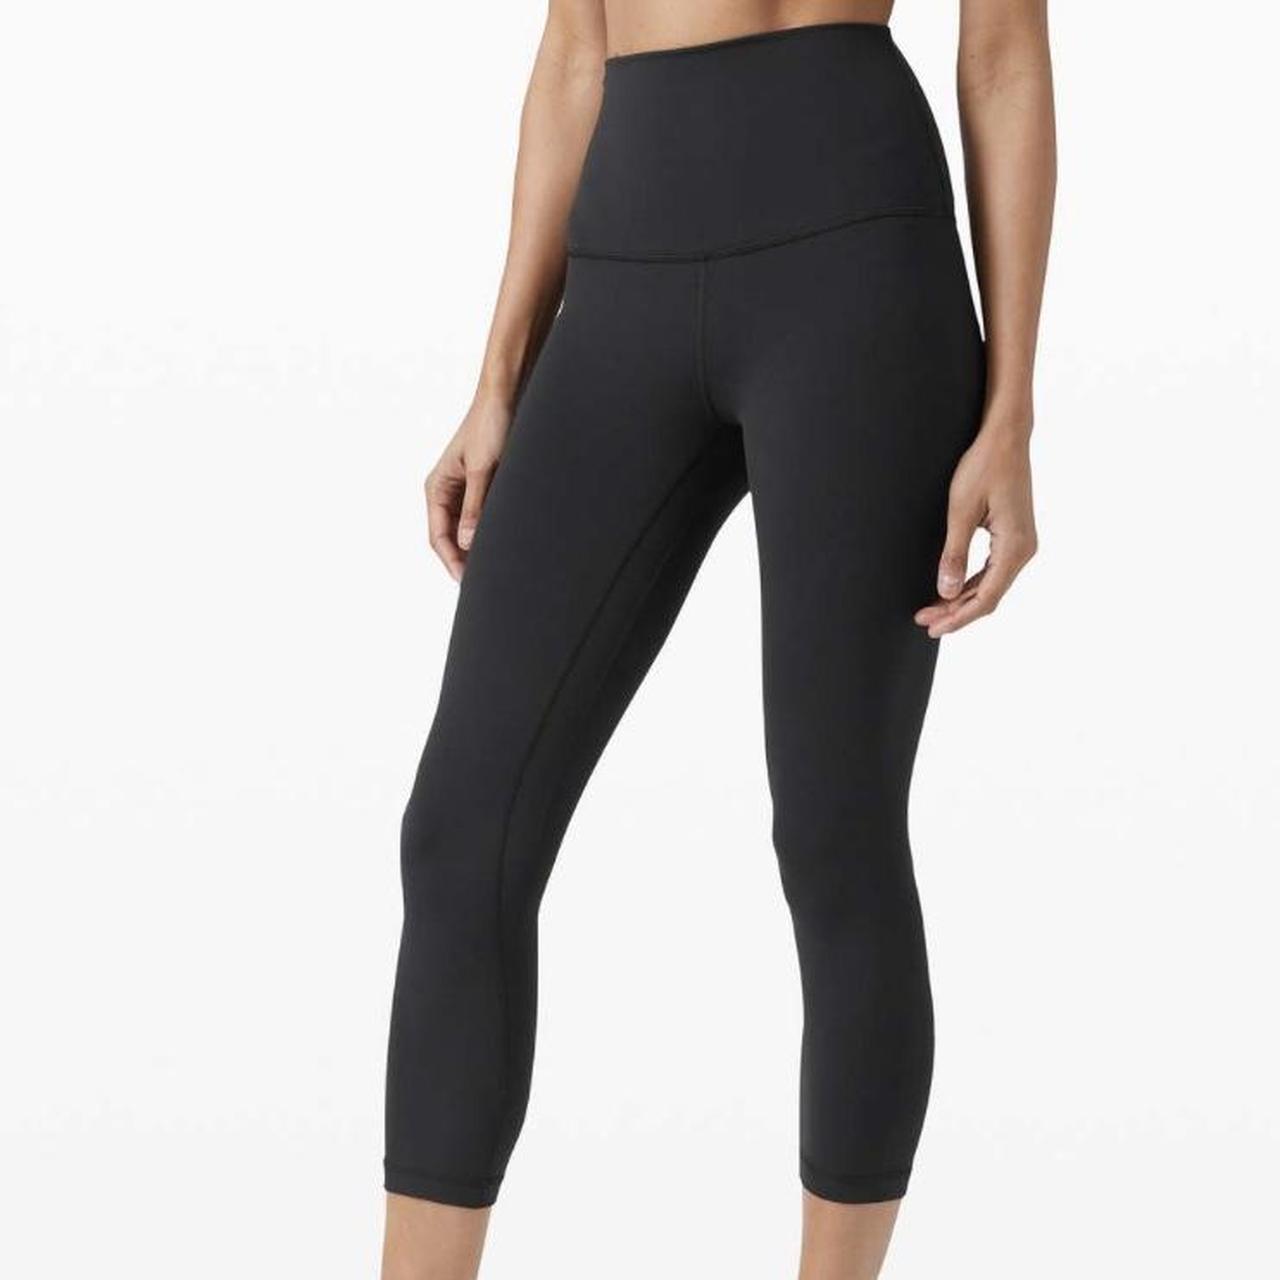 Lululemon Align leggings, size 4, 21”, black